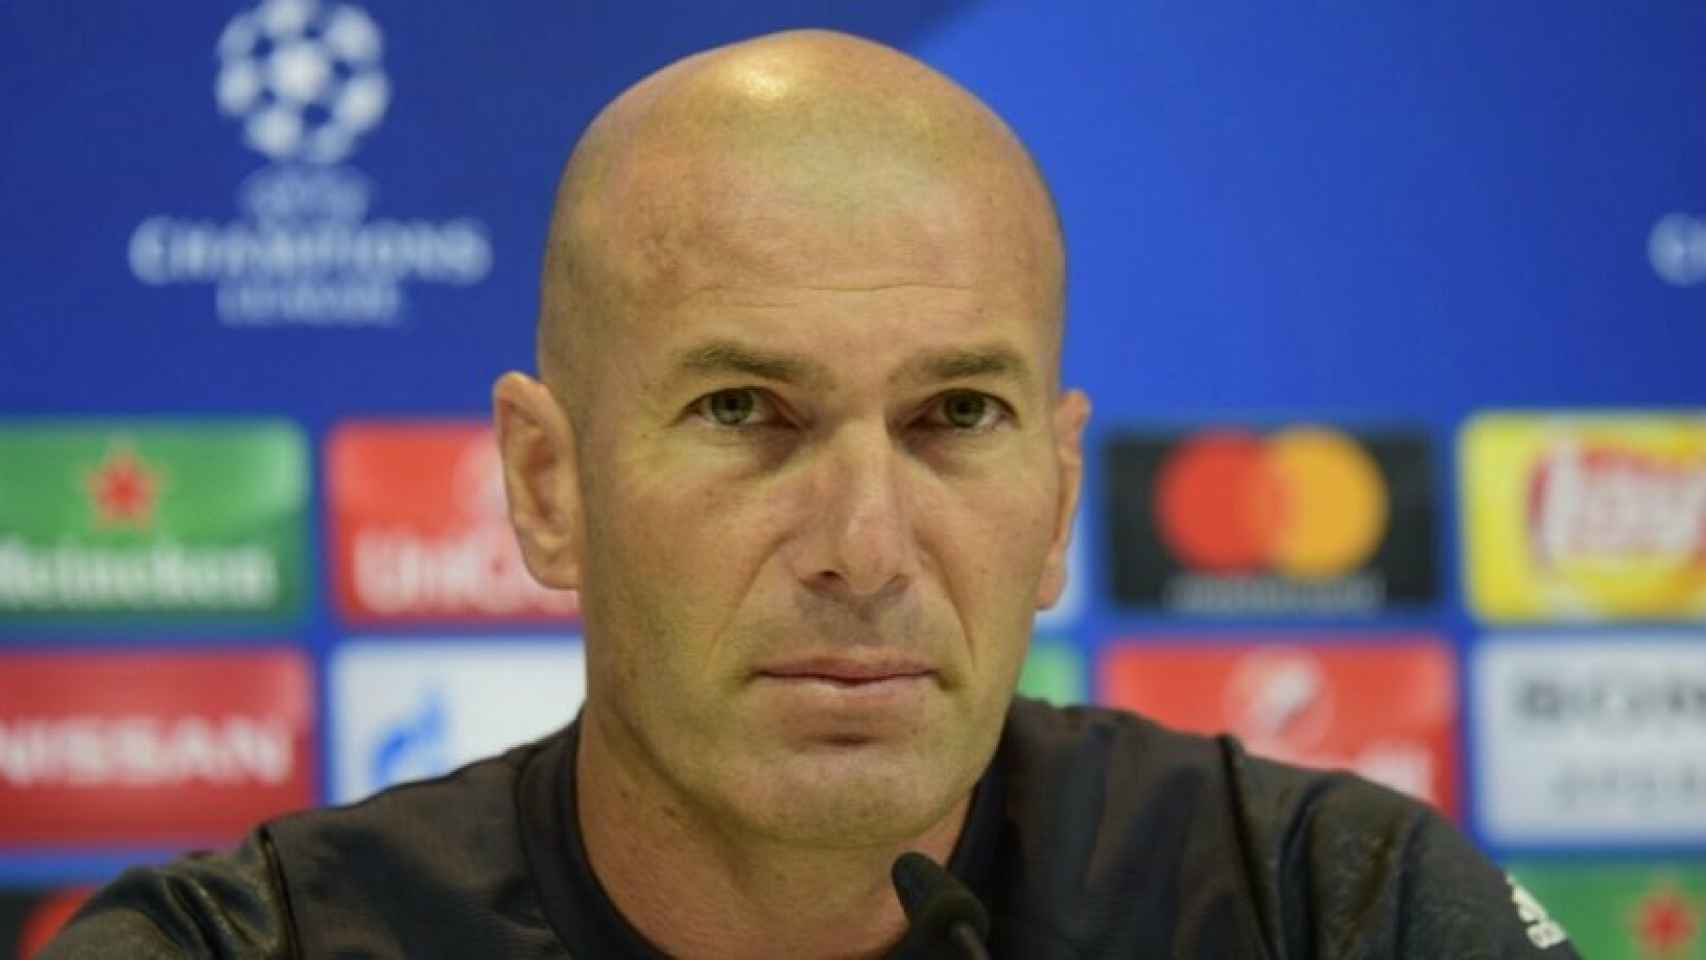 Zidane atento durante la rueda de prensa. Foto: Lucía Contreras / El Bernabéu